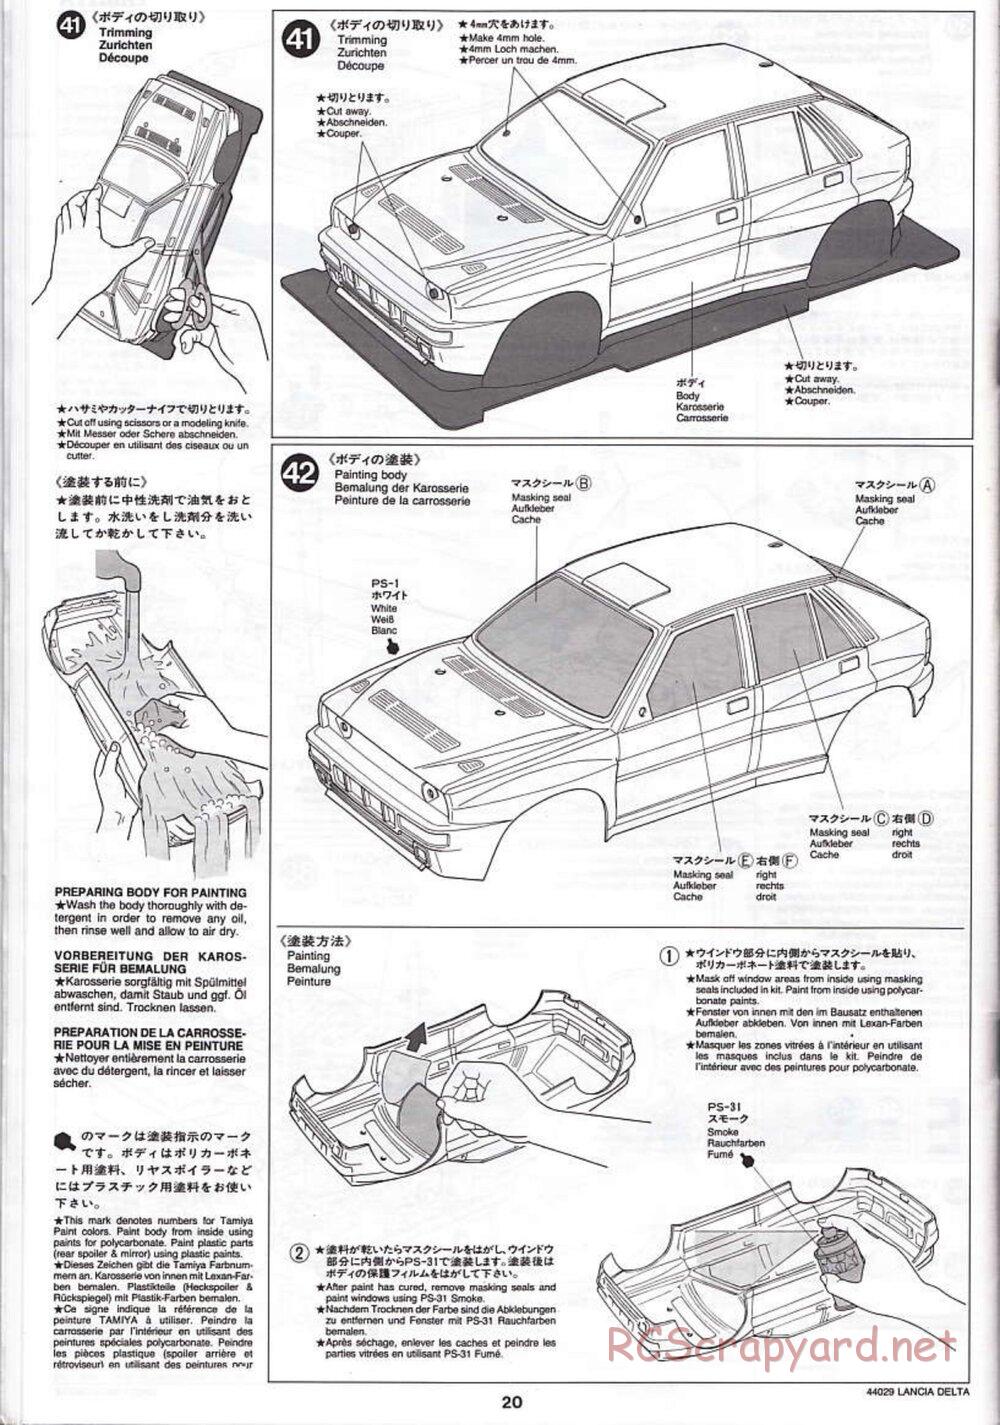 Tamiya - Lancia Delta HF Integrale - TG10 Mk.1 Chassis - Manual - Page 20